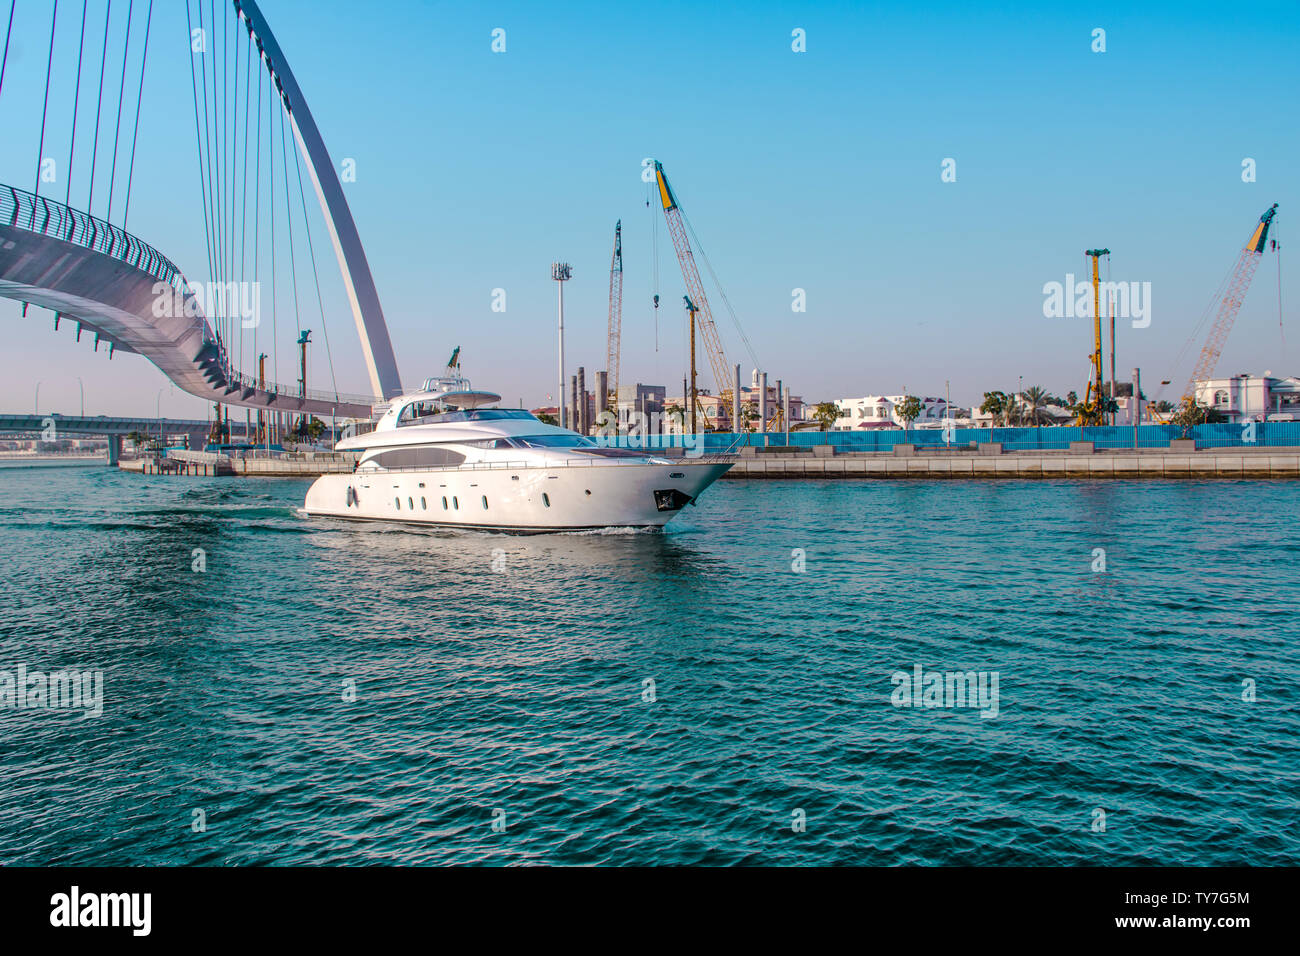 Yachtcharter Fahrt von Dubai Wasser Kanal berühmten Touristenattraktion Toleranz Brücke beste Ort, um Ferien zu verbringen Stockfoto